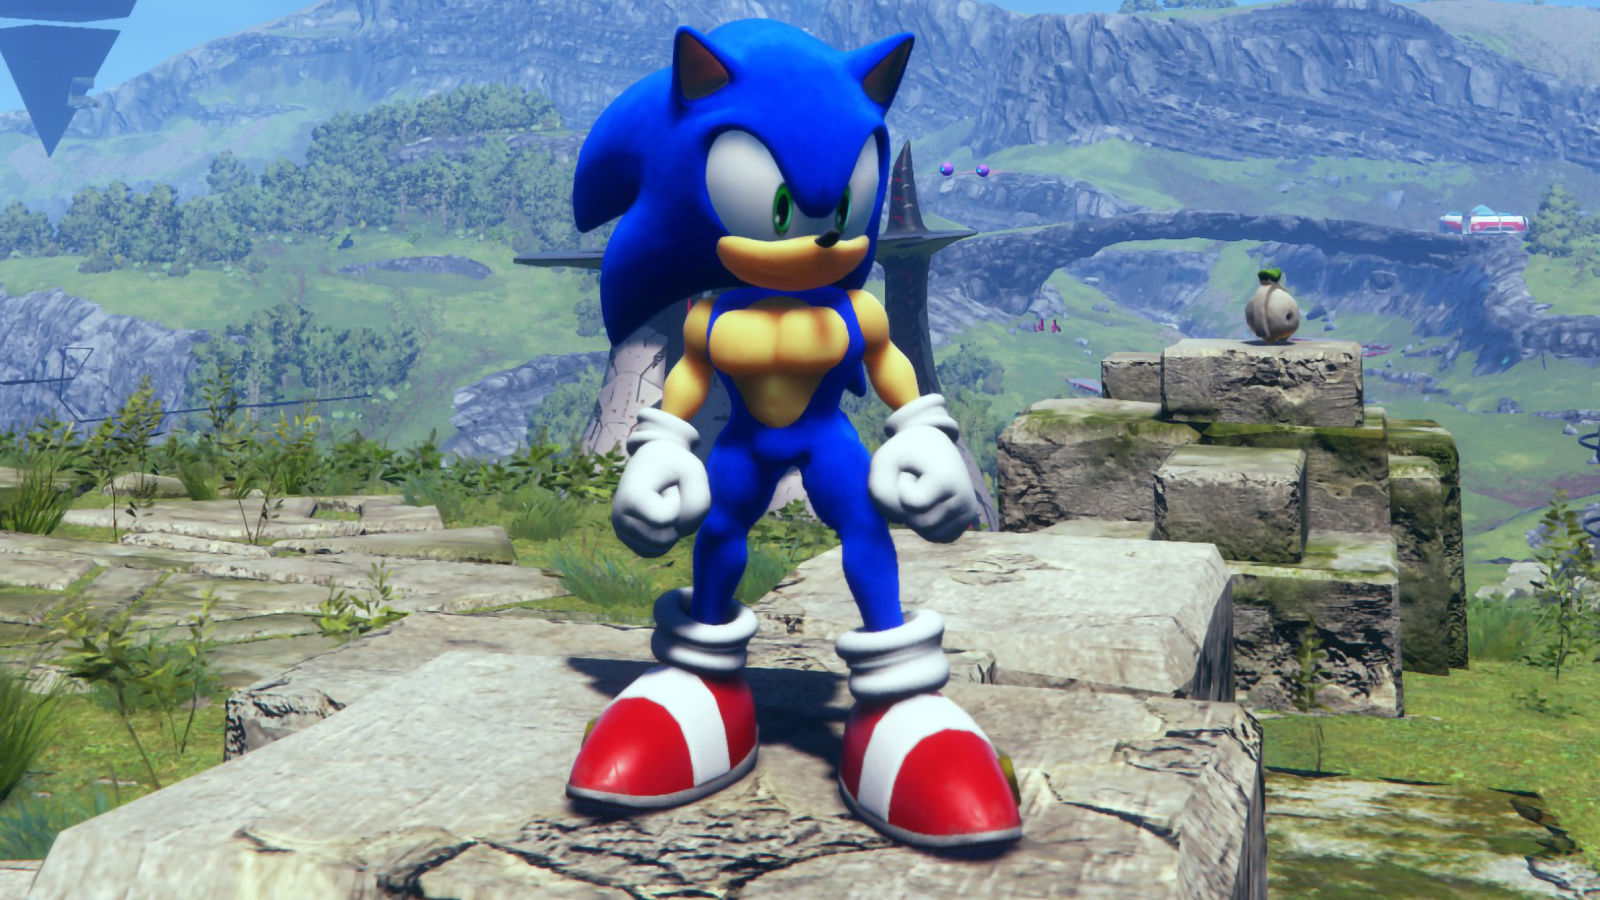 Sonic Frontiers: Die 8 besten Mods und wie Du sie installierst